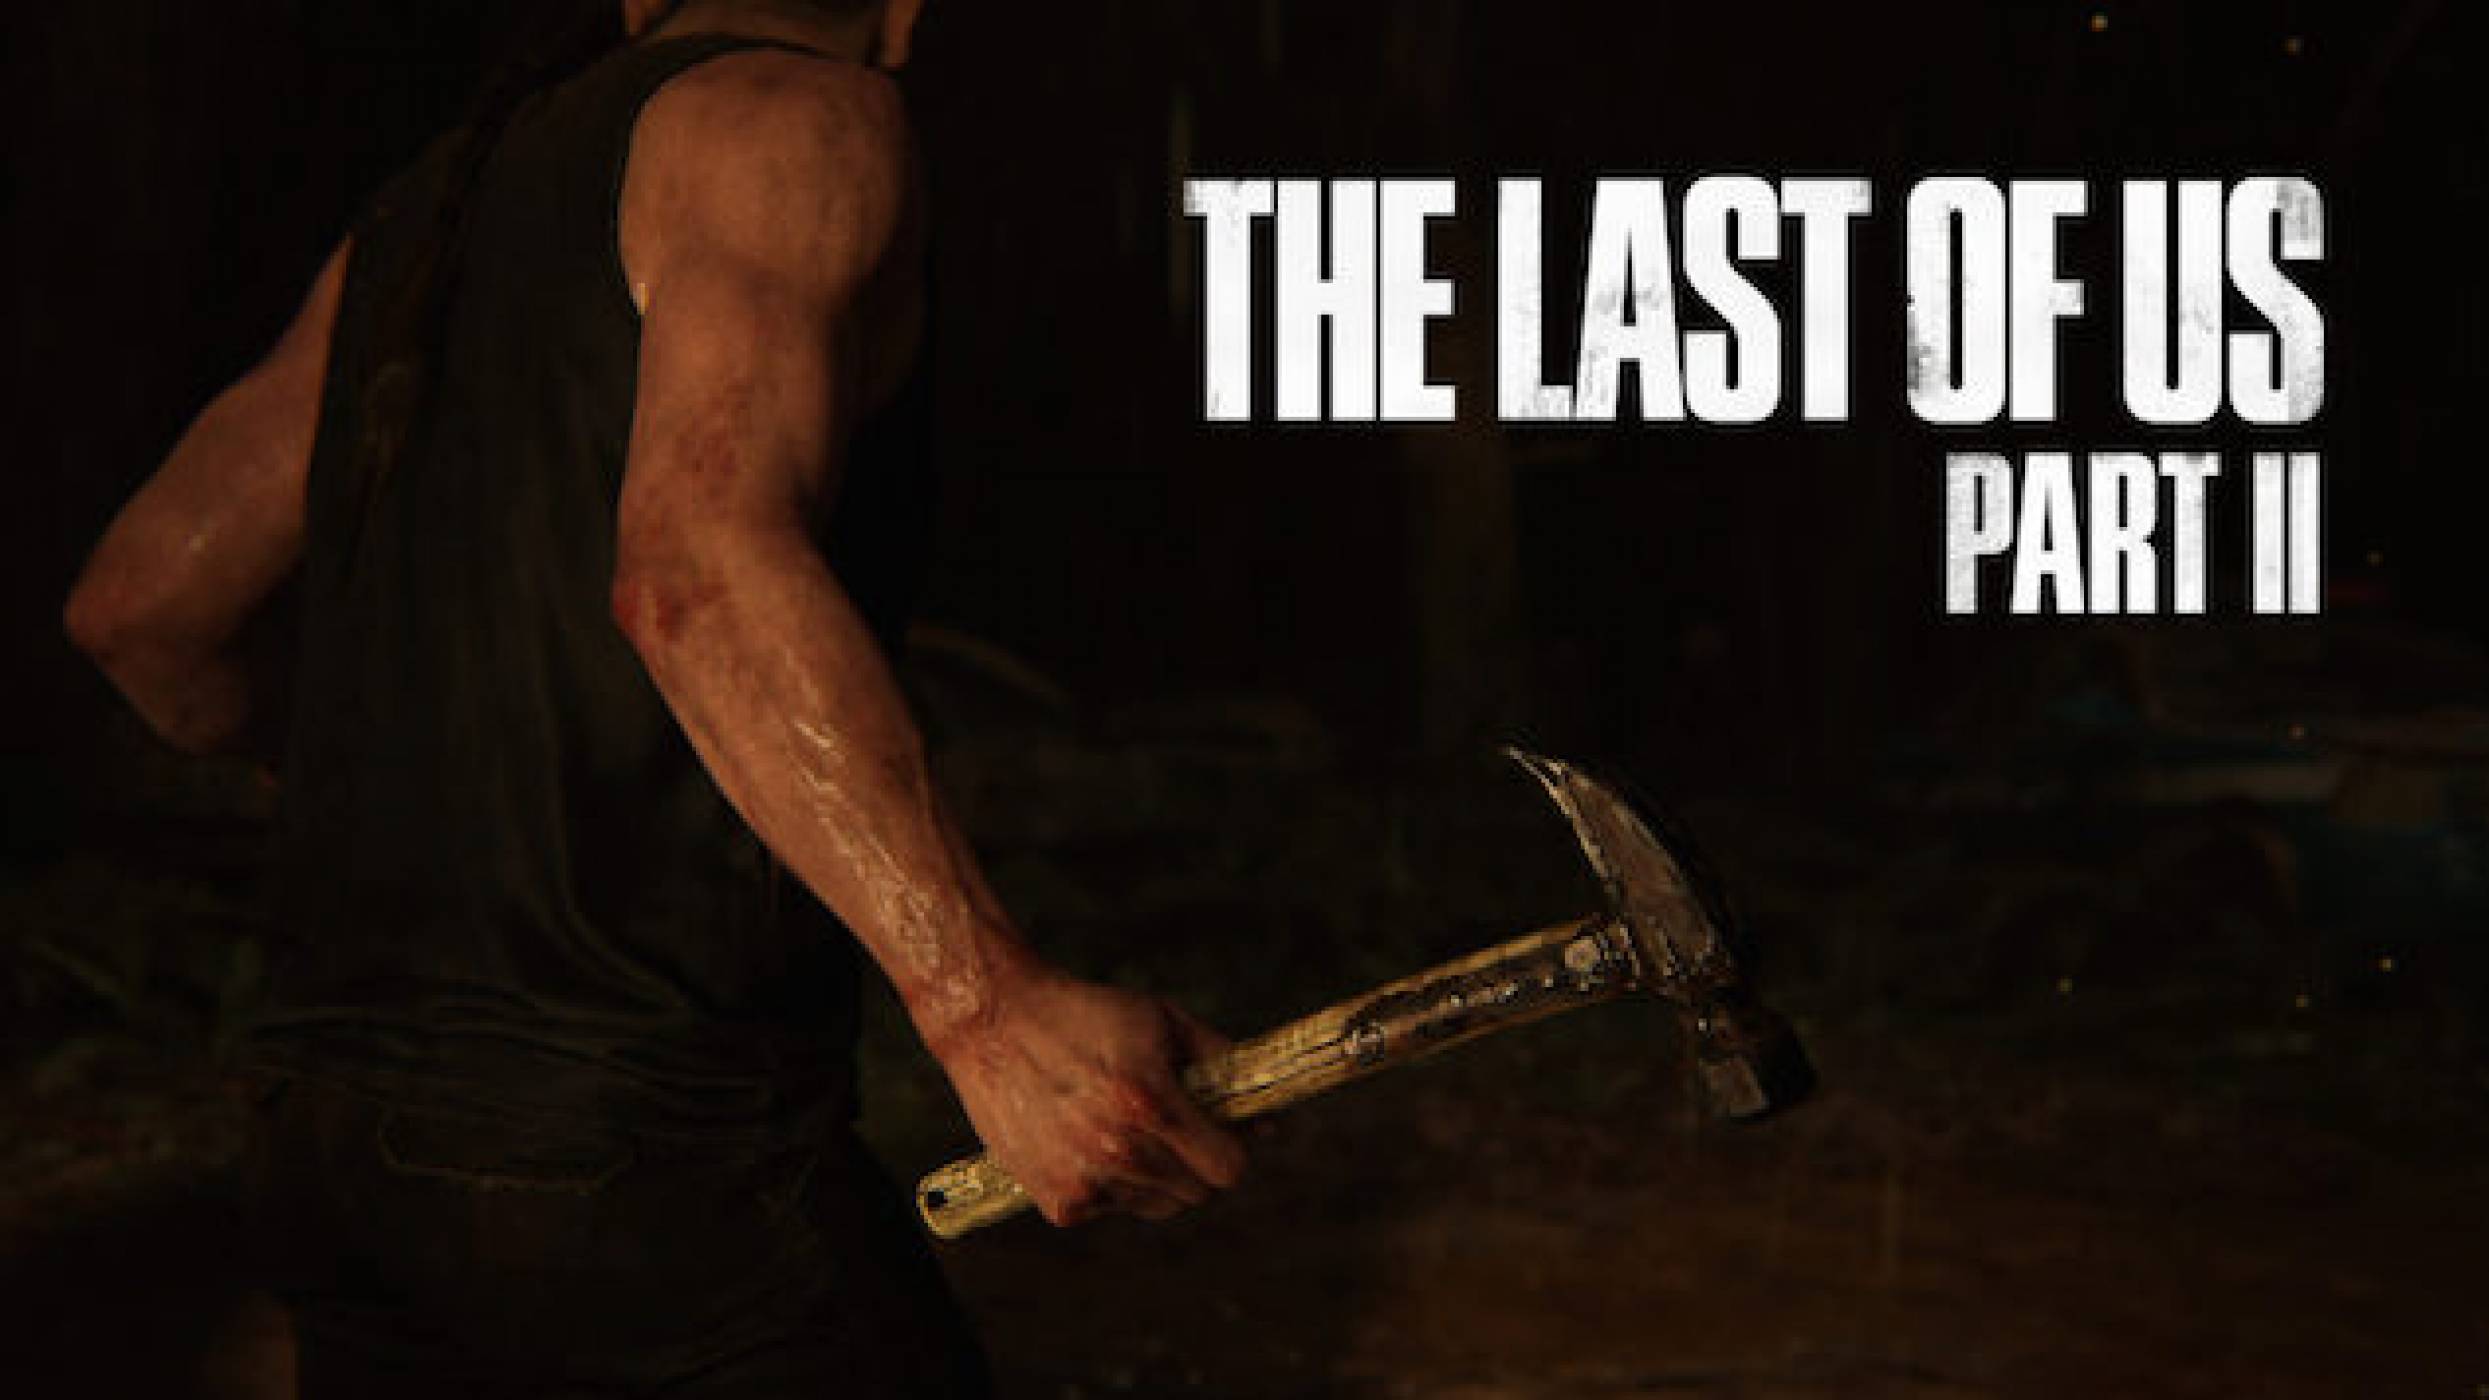 Премиерата на The Last of Us Part II е много близо  (ВИДЕО)